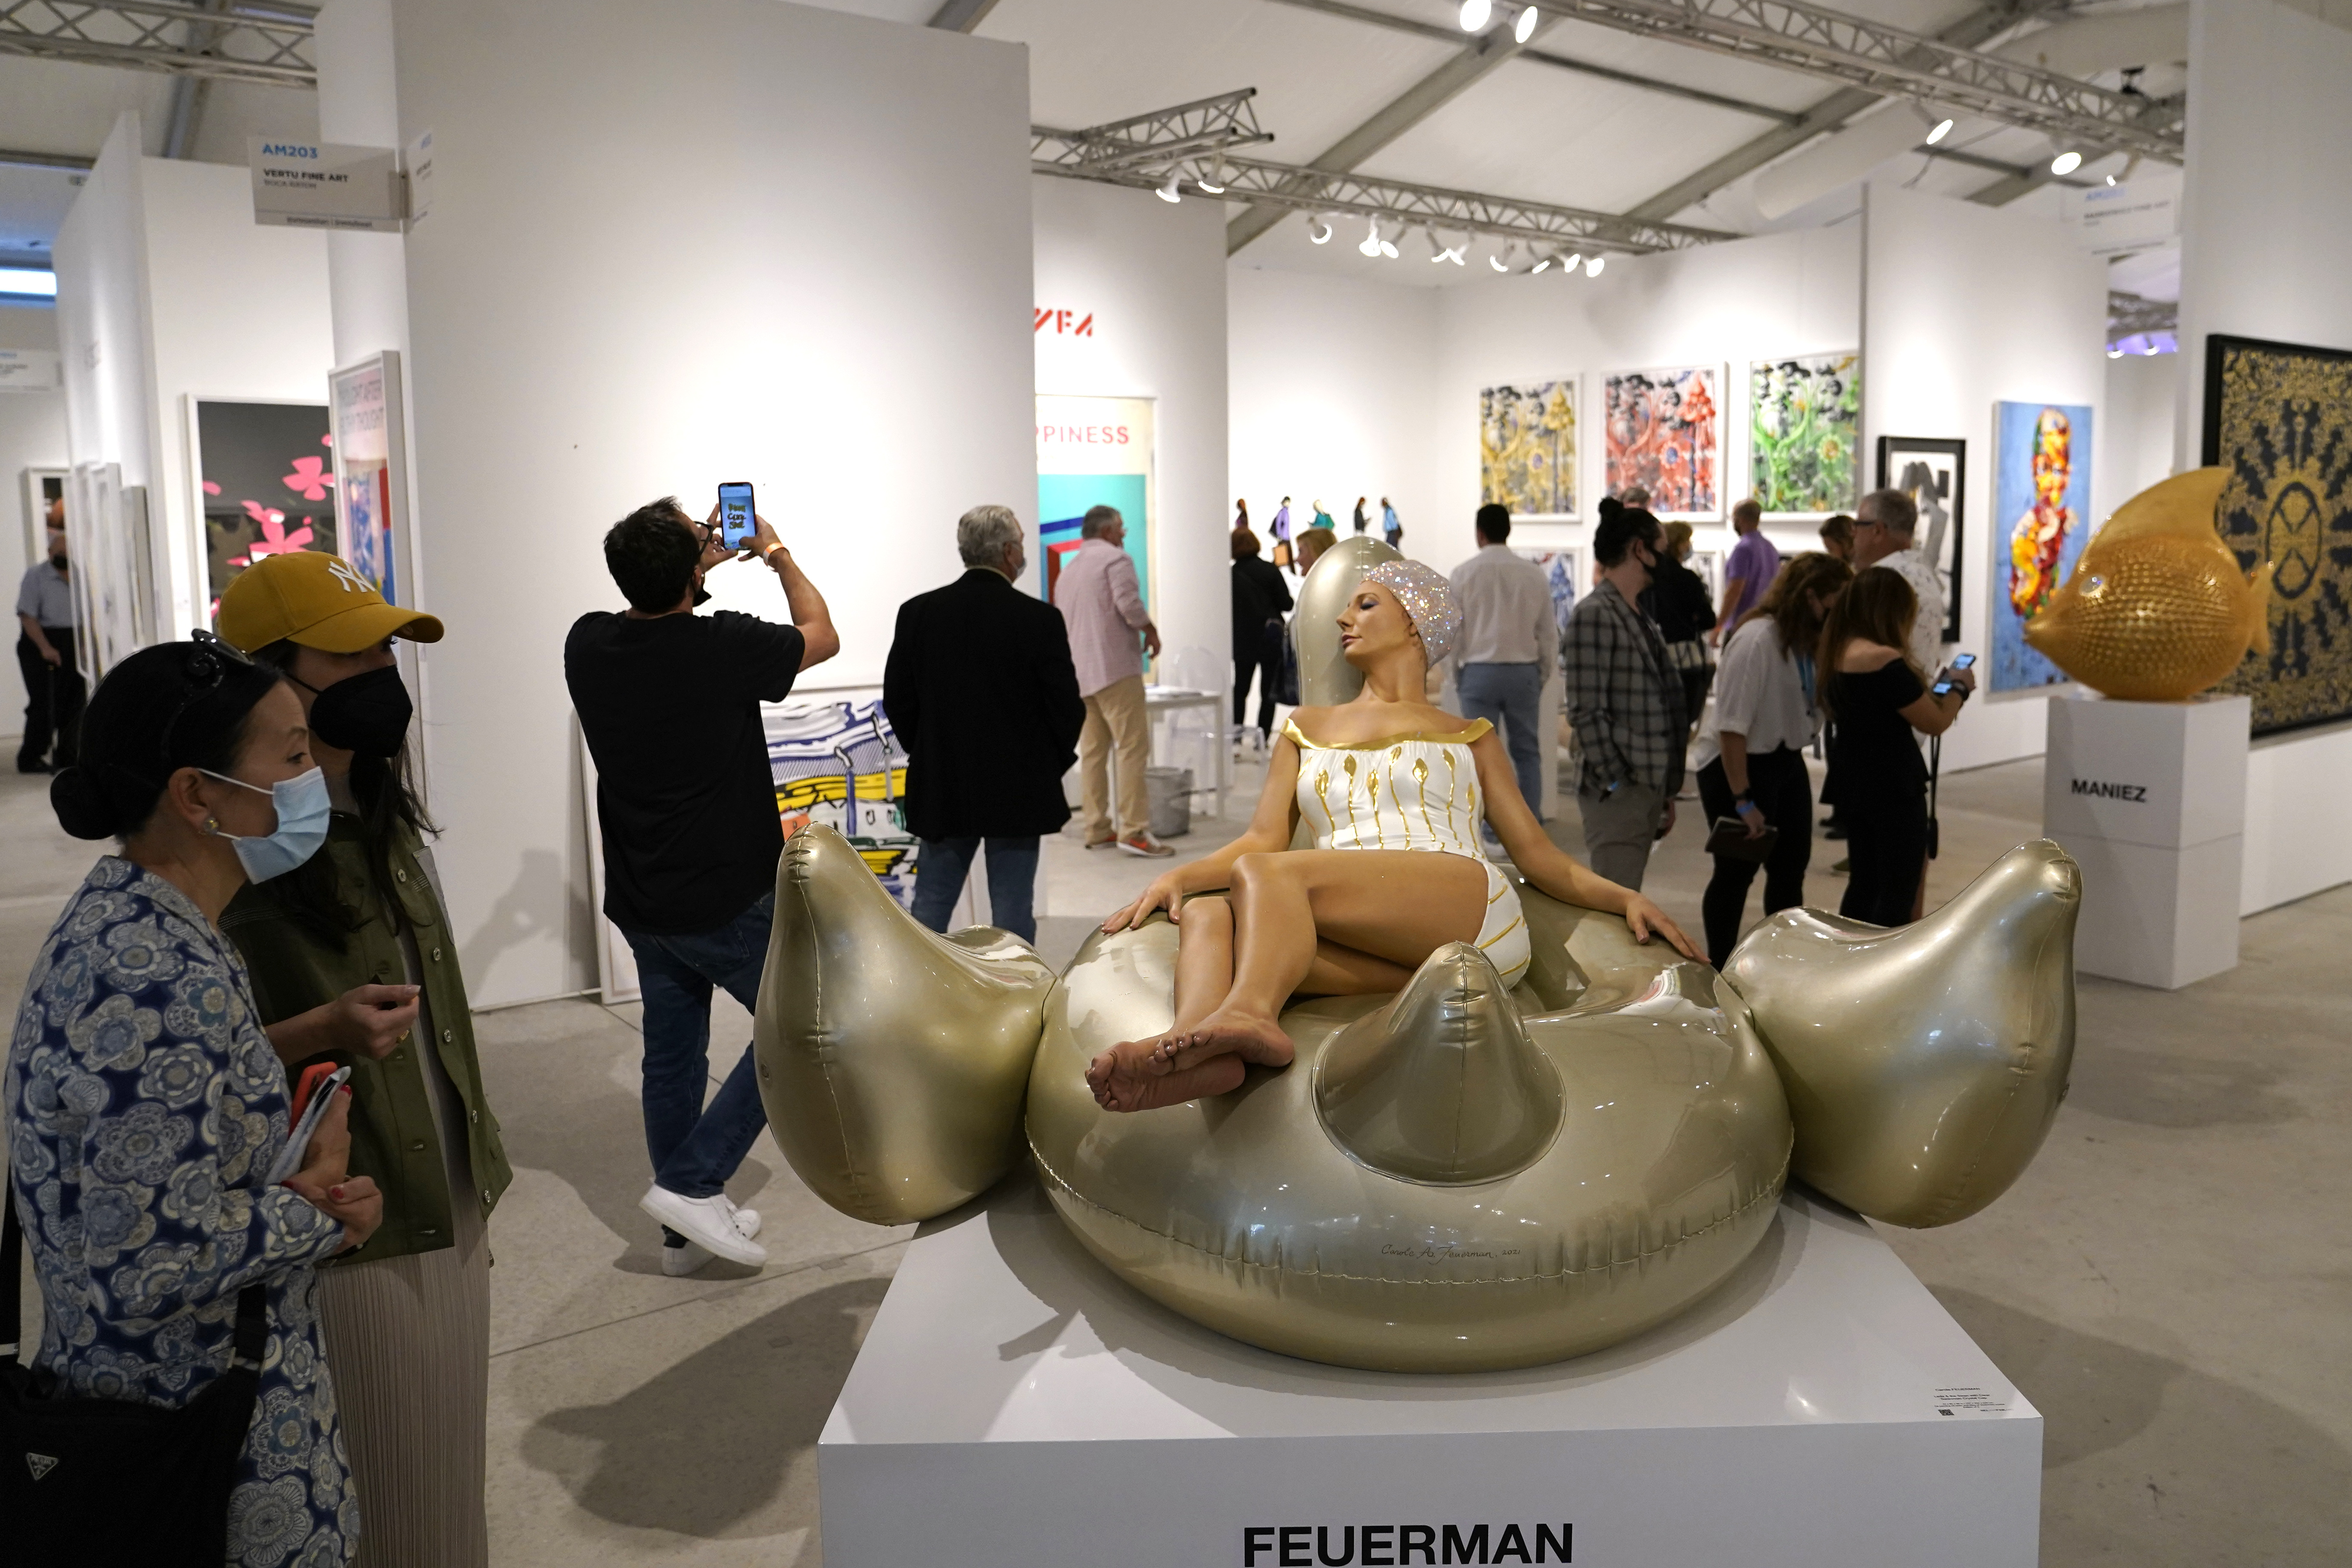 Louis Vuitton to Display Artwork at Art Basel Miami Beach - Lifestyle Media